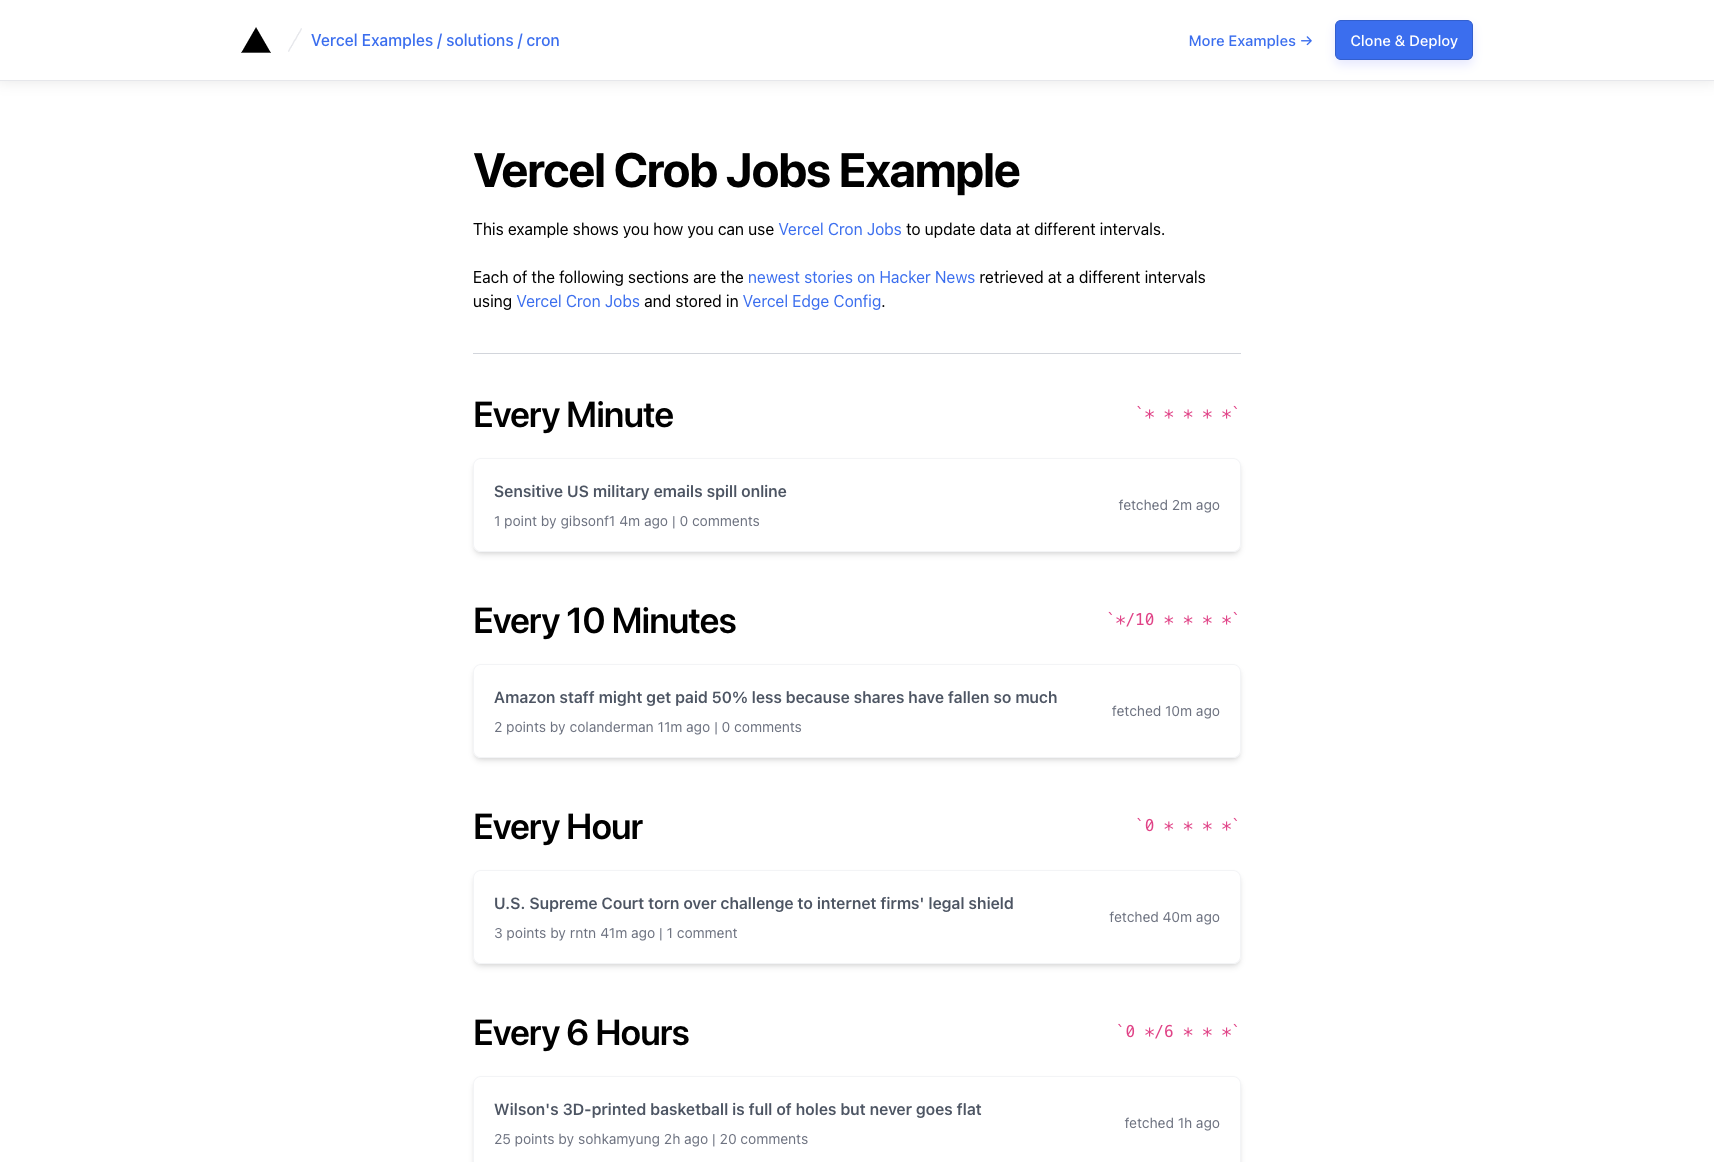 Vercel Cron Job Example